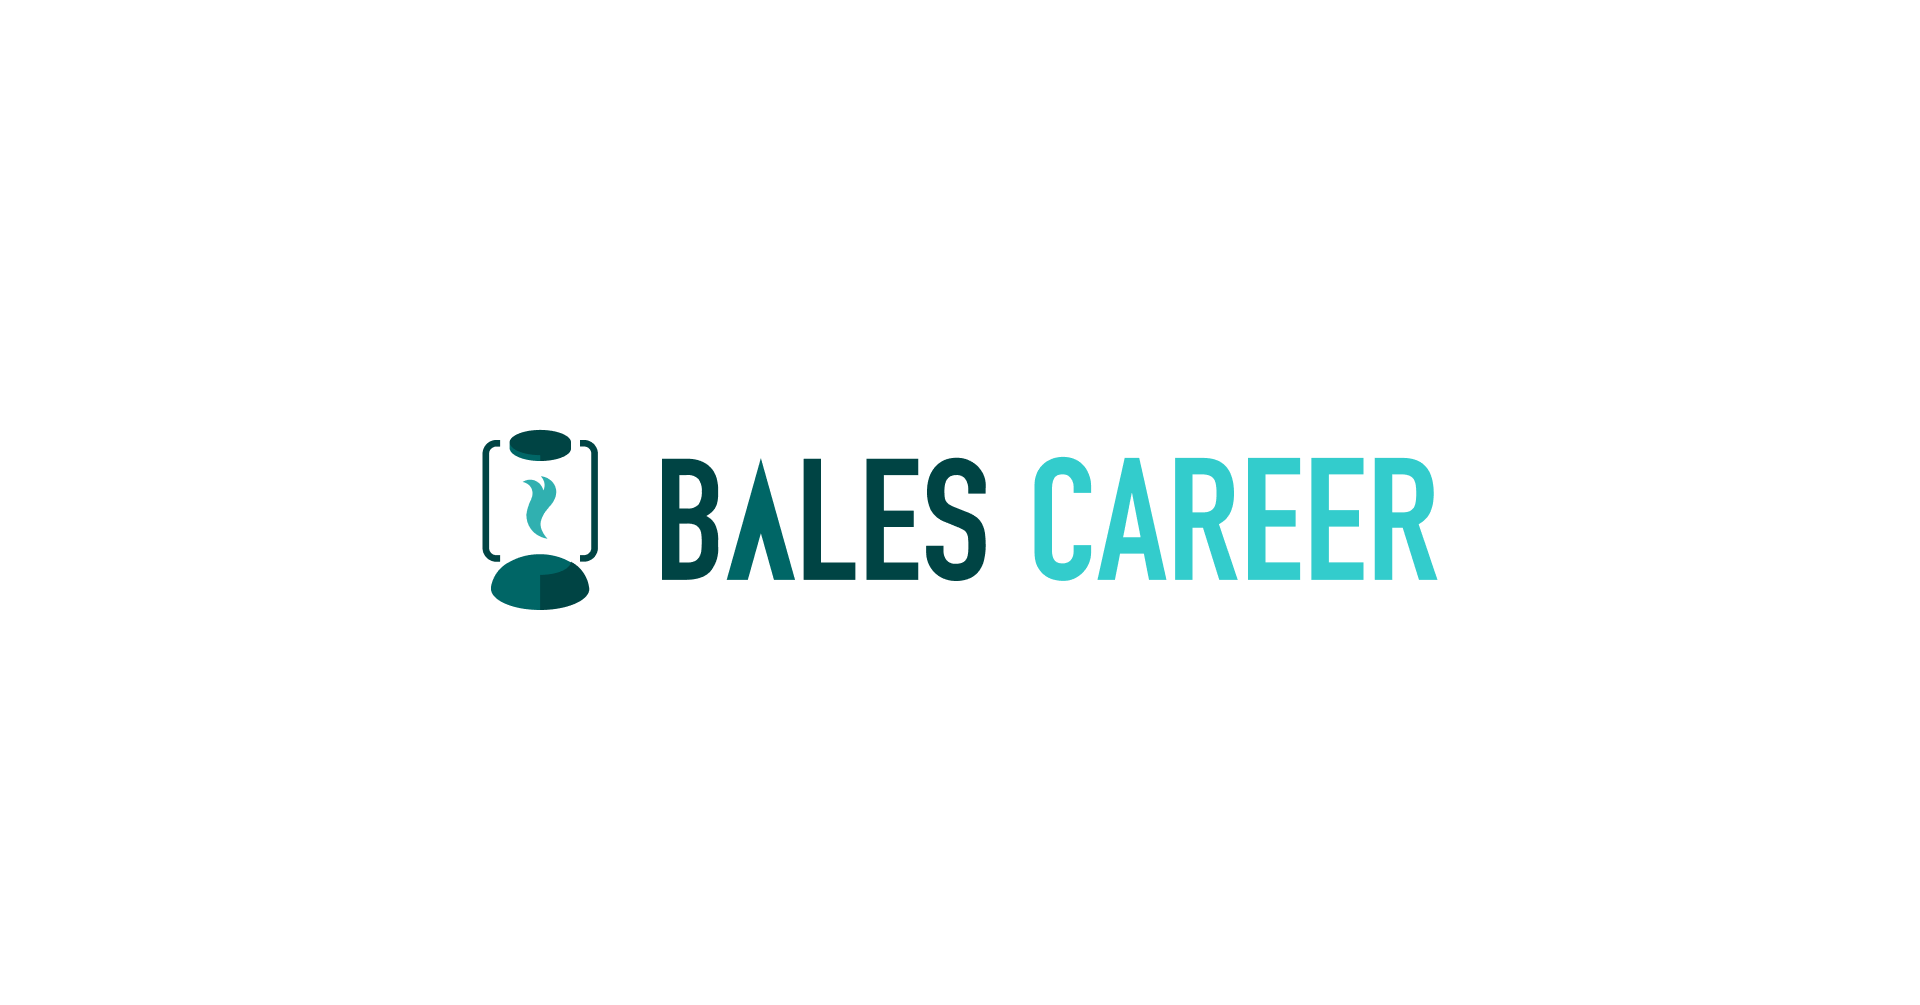 スマートキャンプ、インサイドセールス特化型転職エージェントサービス「BALES CAREER」の提供開始